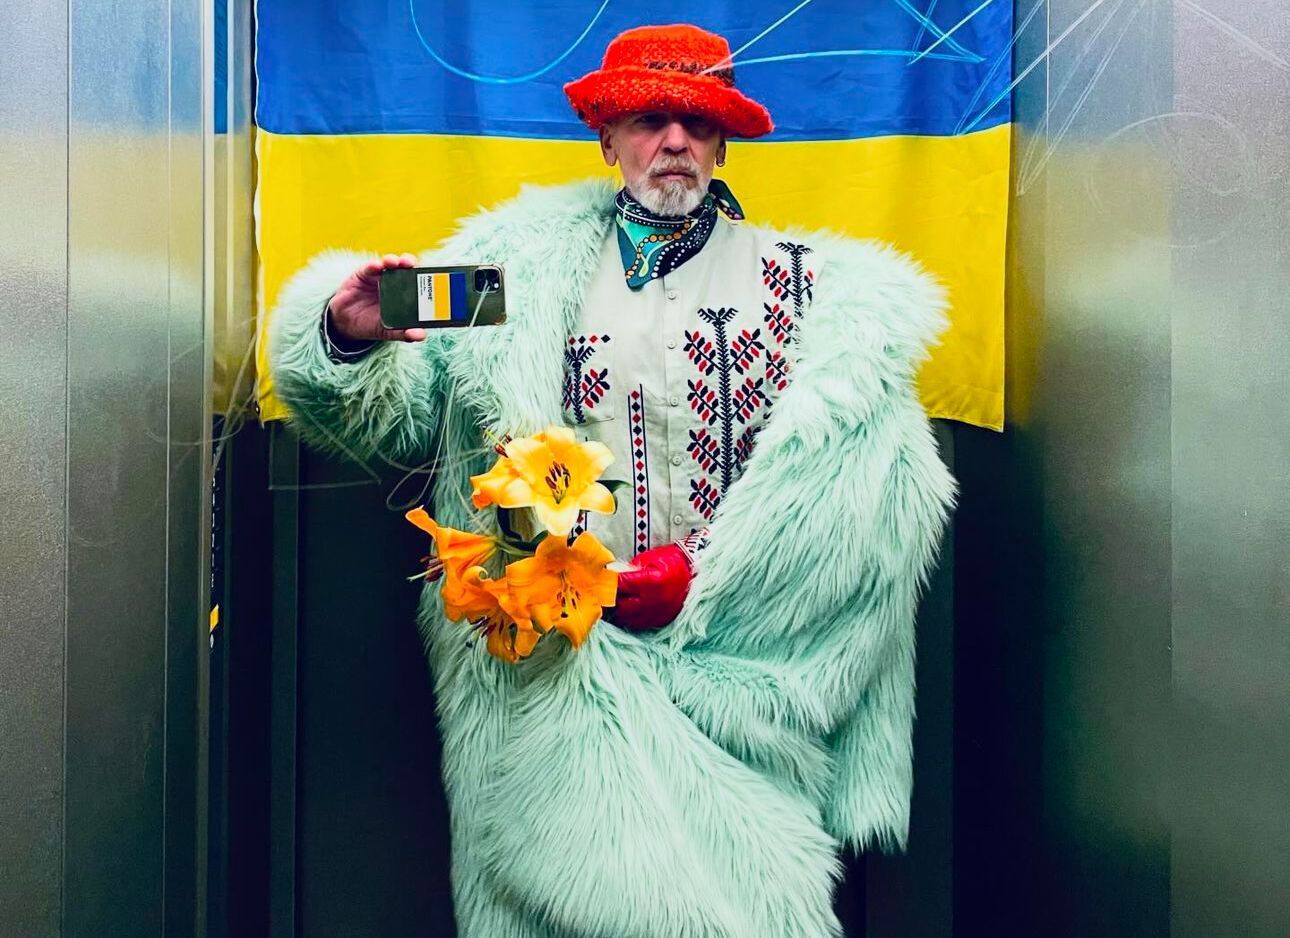 Почувствовал привкус боли: дизайнер Франк Уайлд, известный сине-желтыми лифтолуками, о визите в Киев